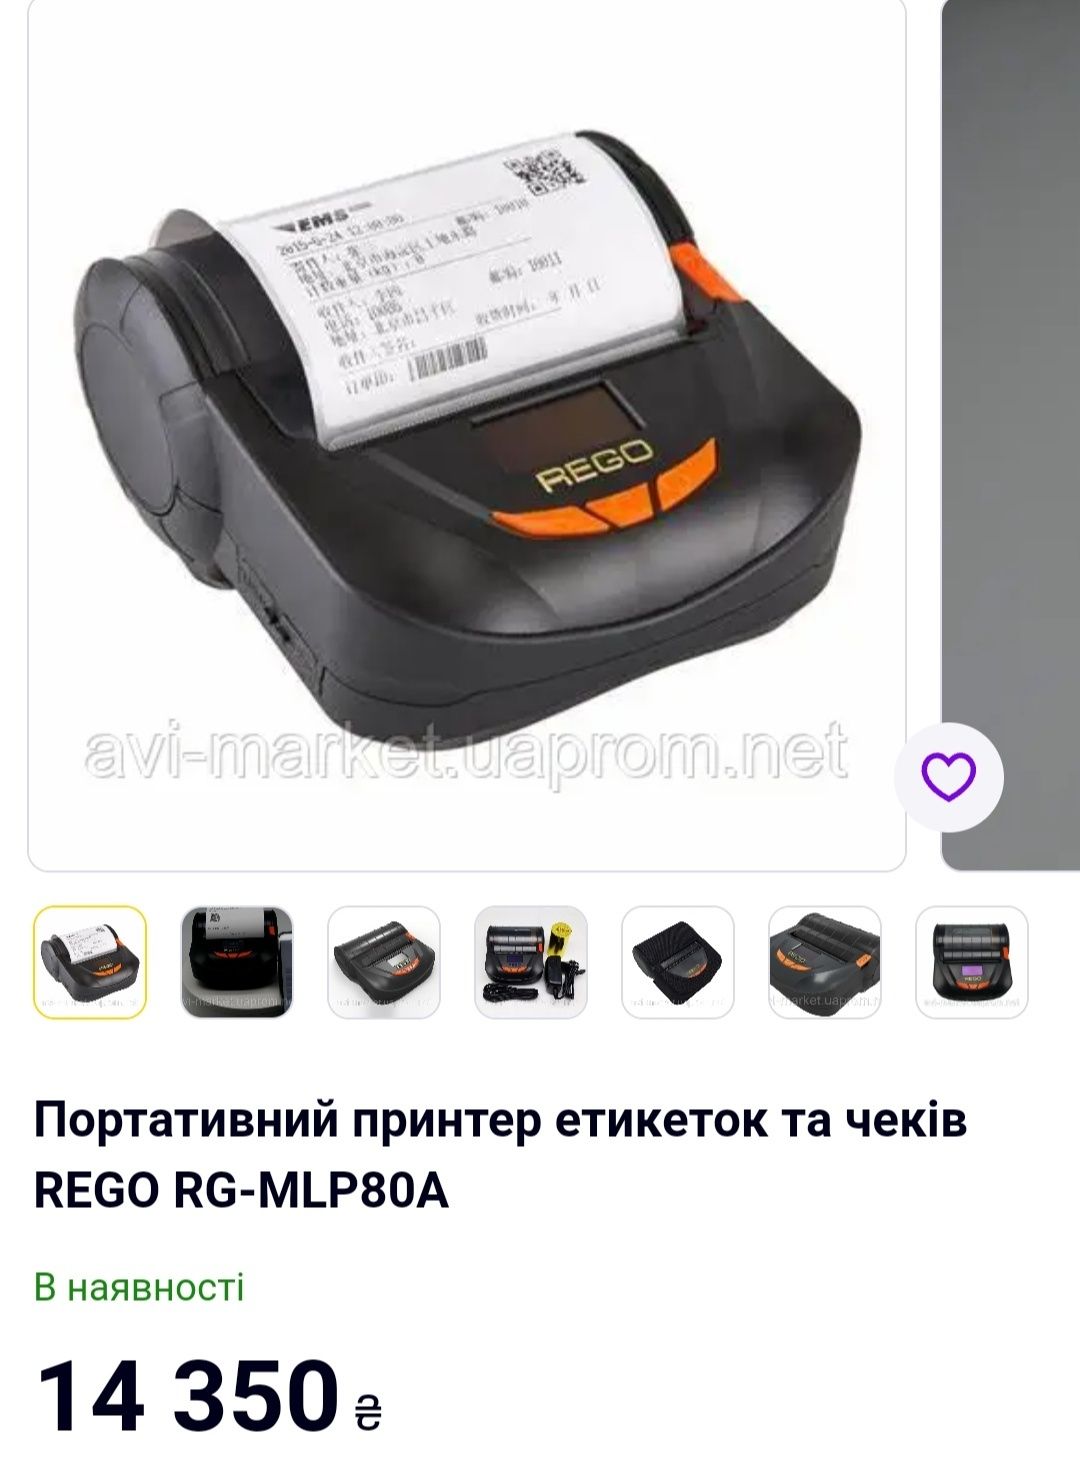 Портативний принтер етикеток та чеків REGO RG-MLP80A